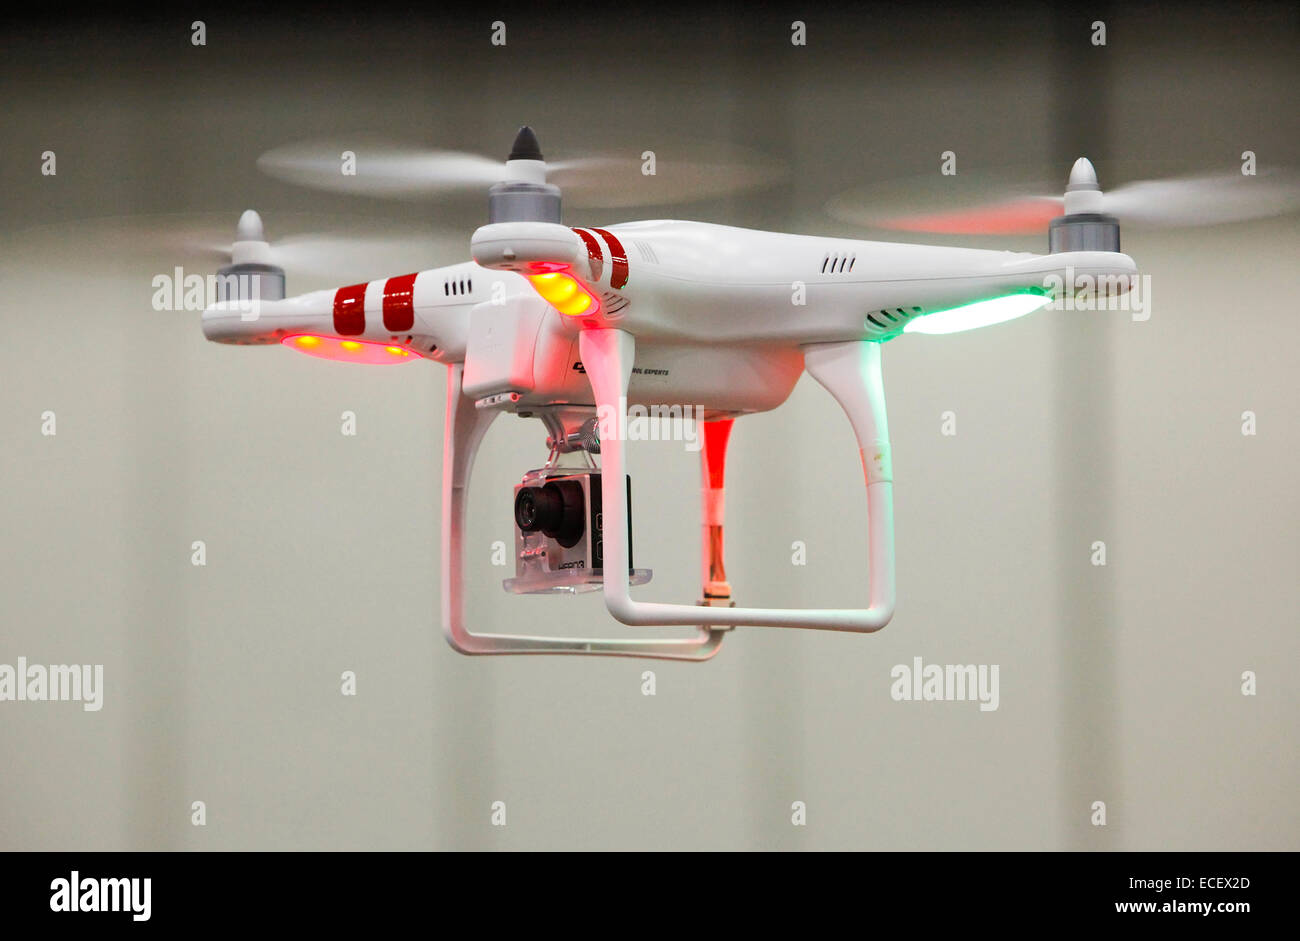 Detroit, Michigan - Un véhicule aérien sans pilote (drone), équipé d'une caméra. Banque D'Images